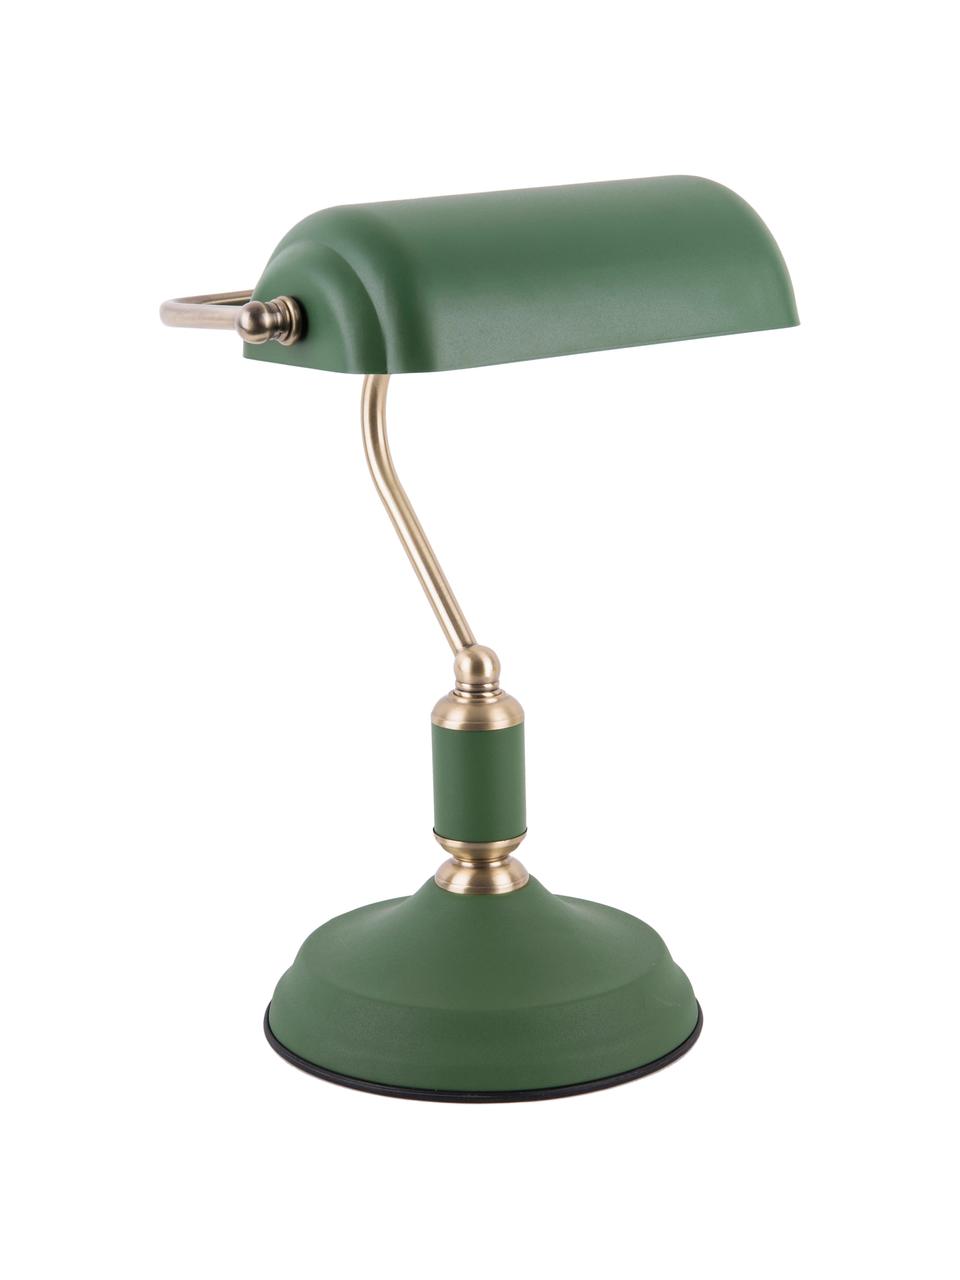 Lampa biurkowa z metalu w stylu retro Bank, Zielony, S 27 x W 34 cm